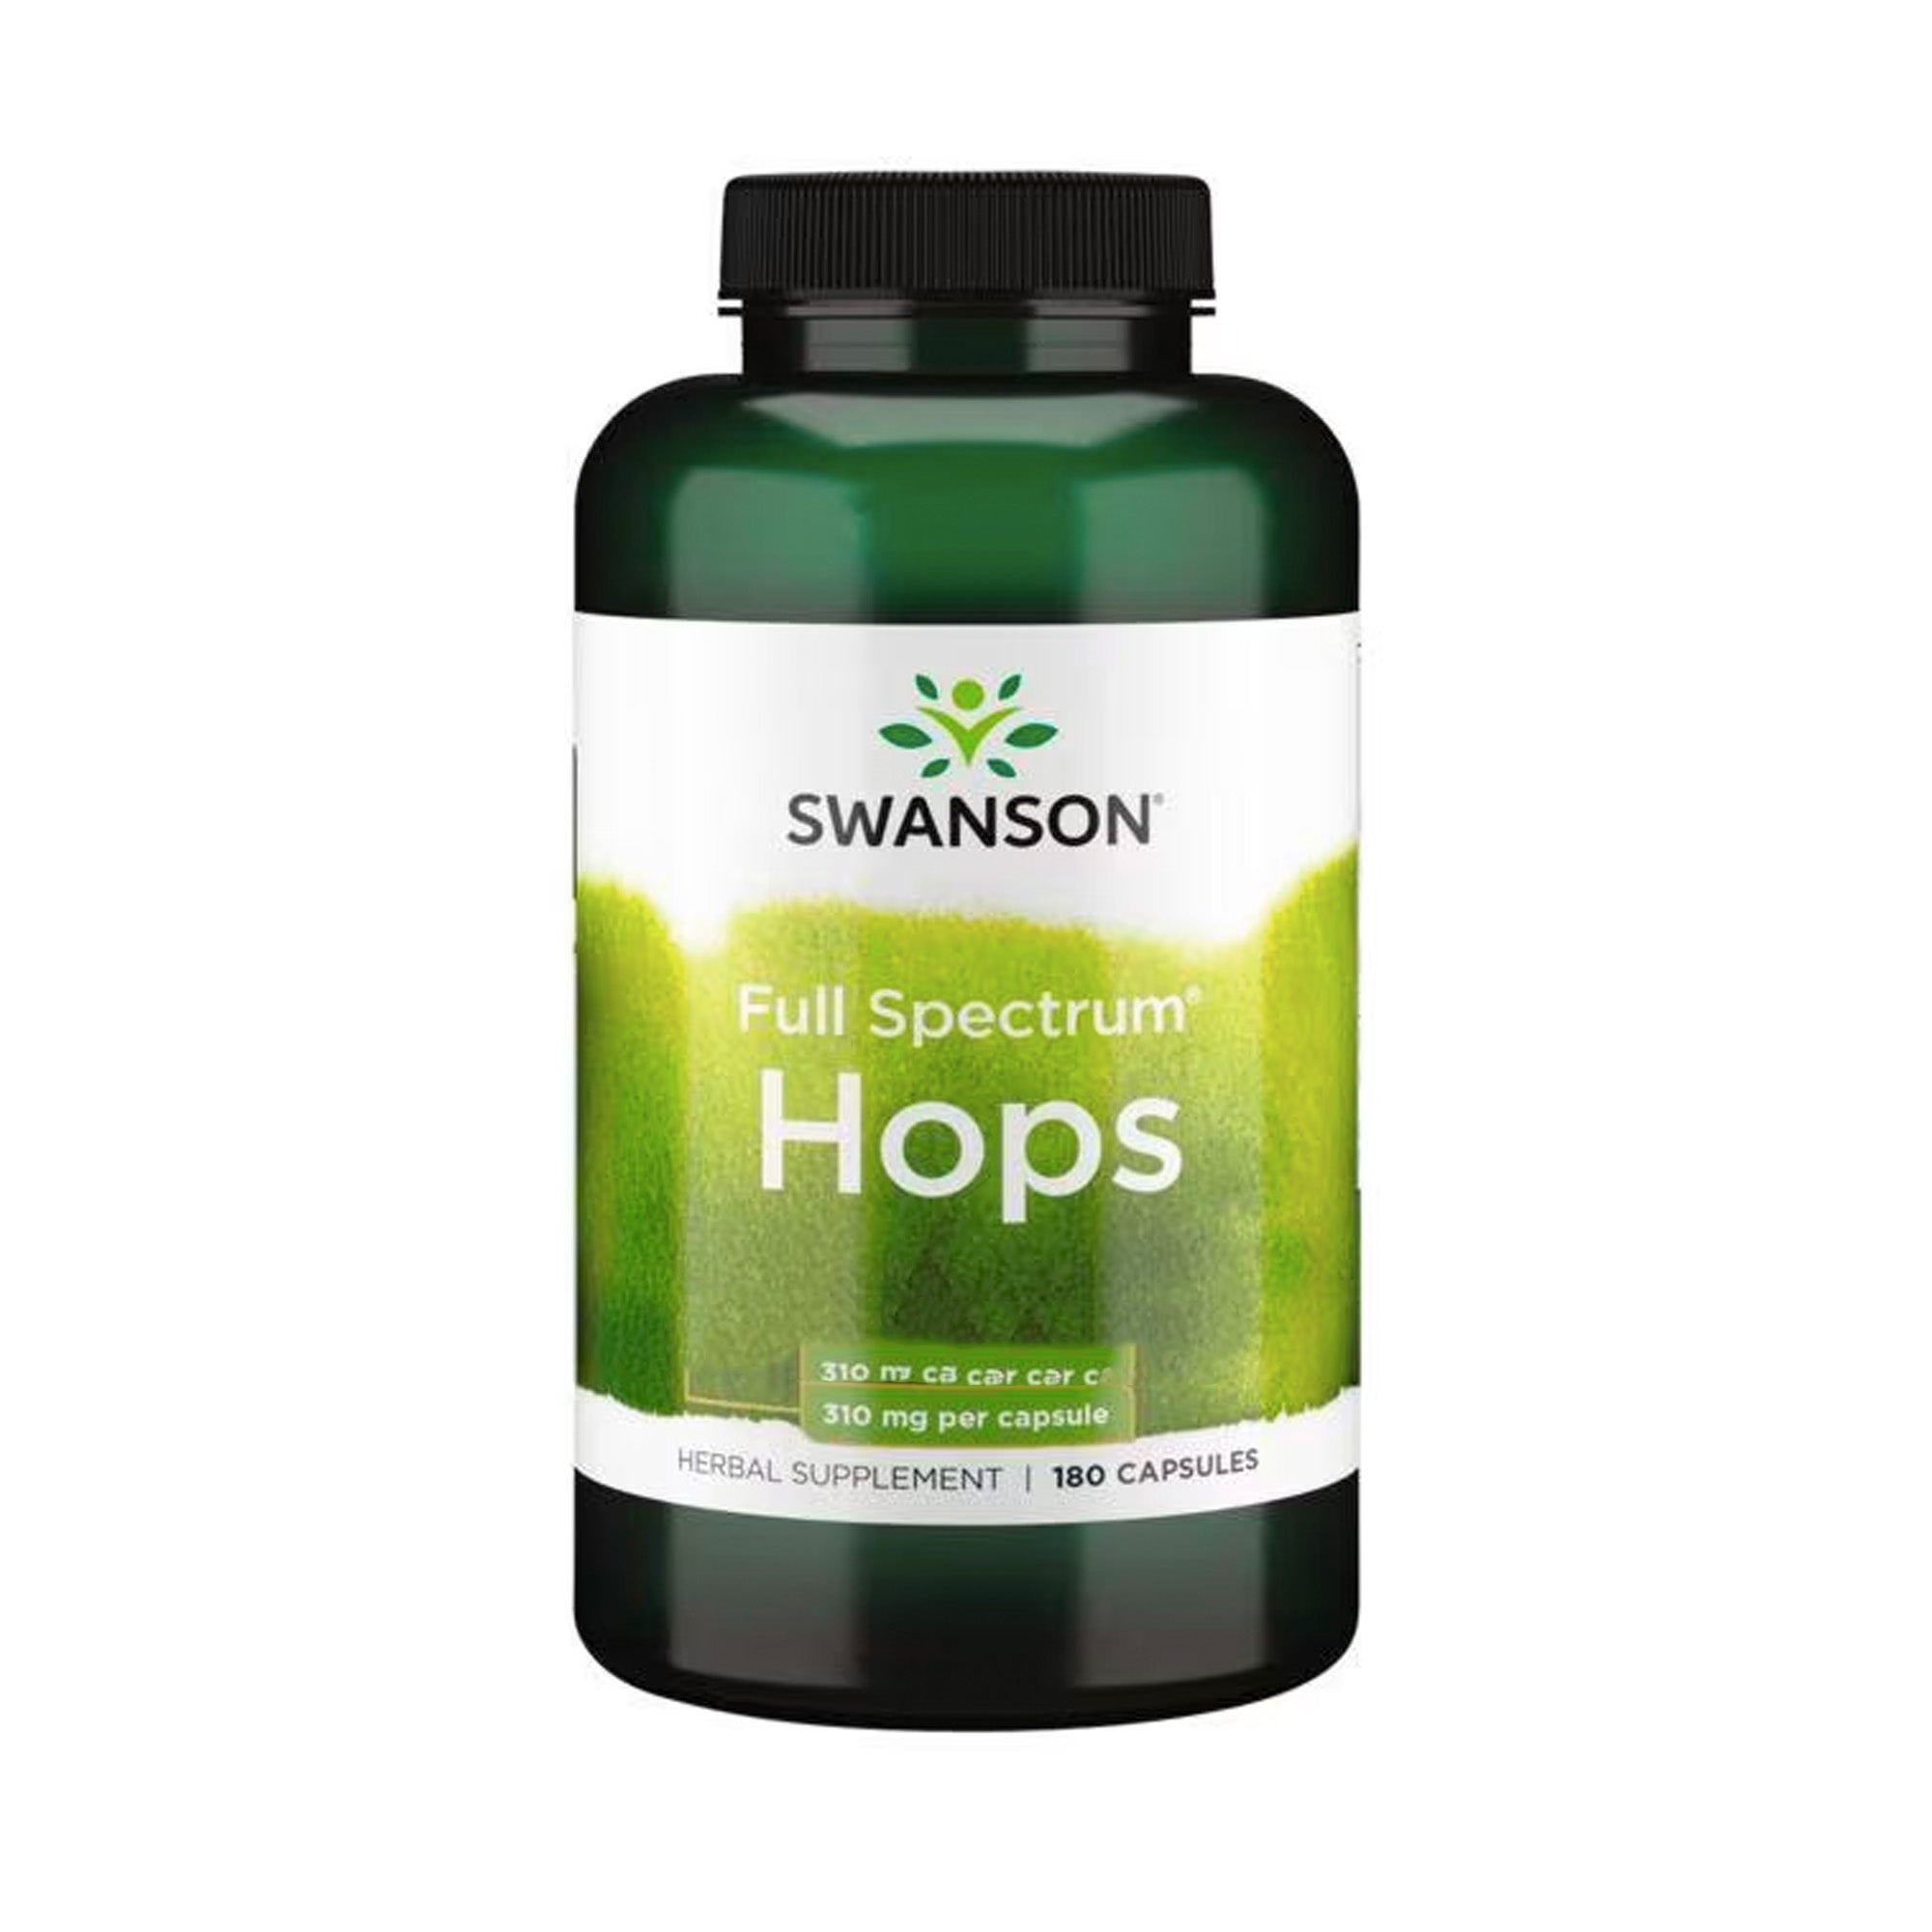 Swanson Health Hops | 620mg Per Dosis | 180 Capsules voor Natuurlijke Rust